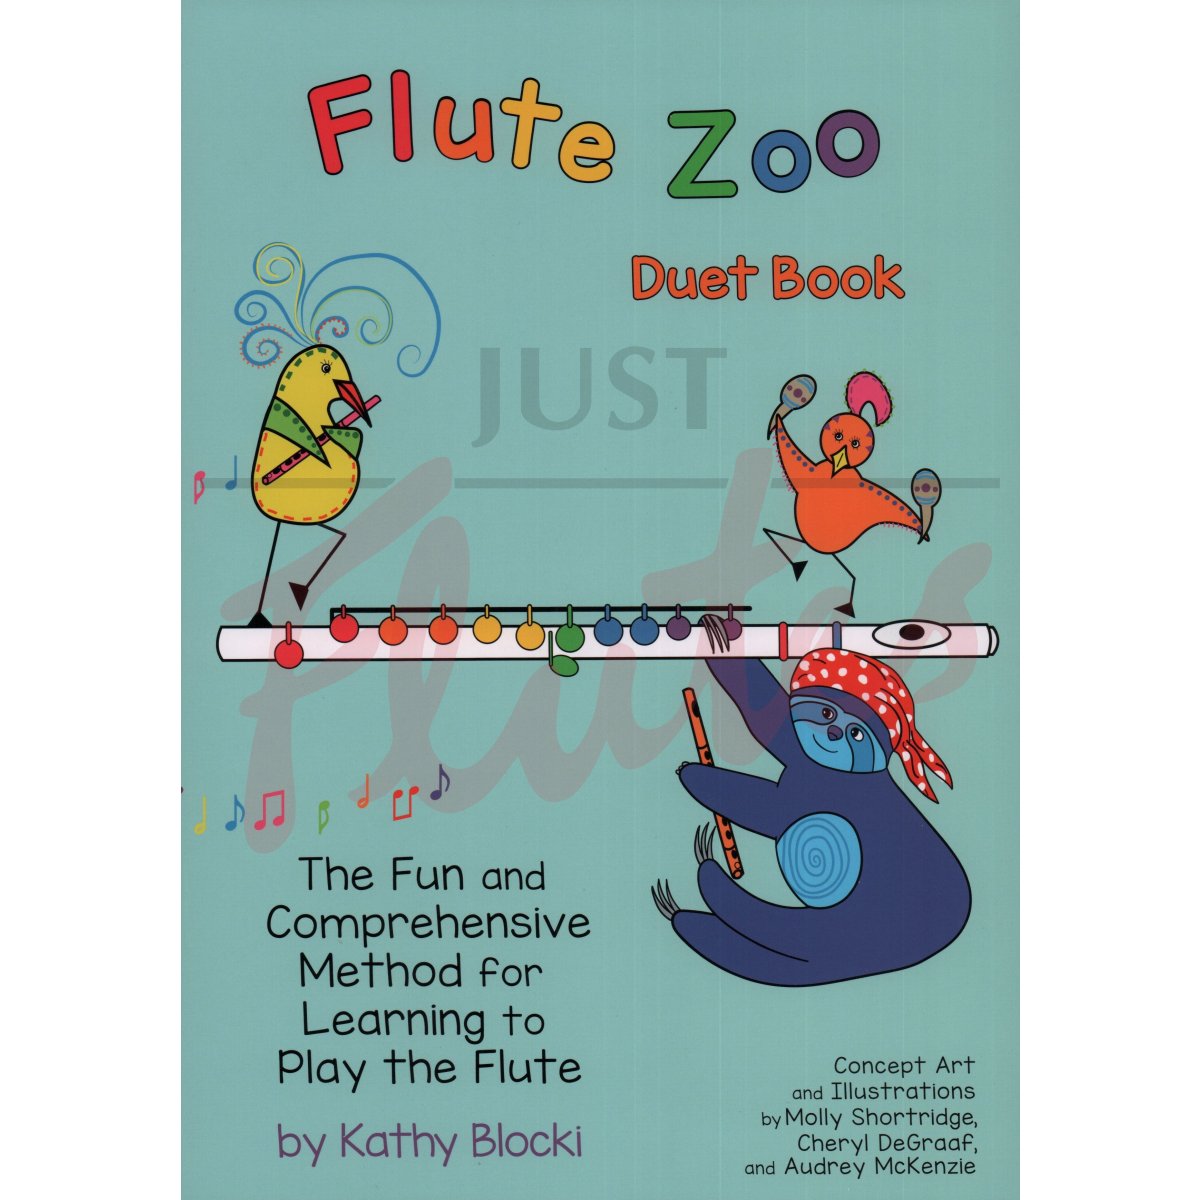 Flute Zoo Duet Book